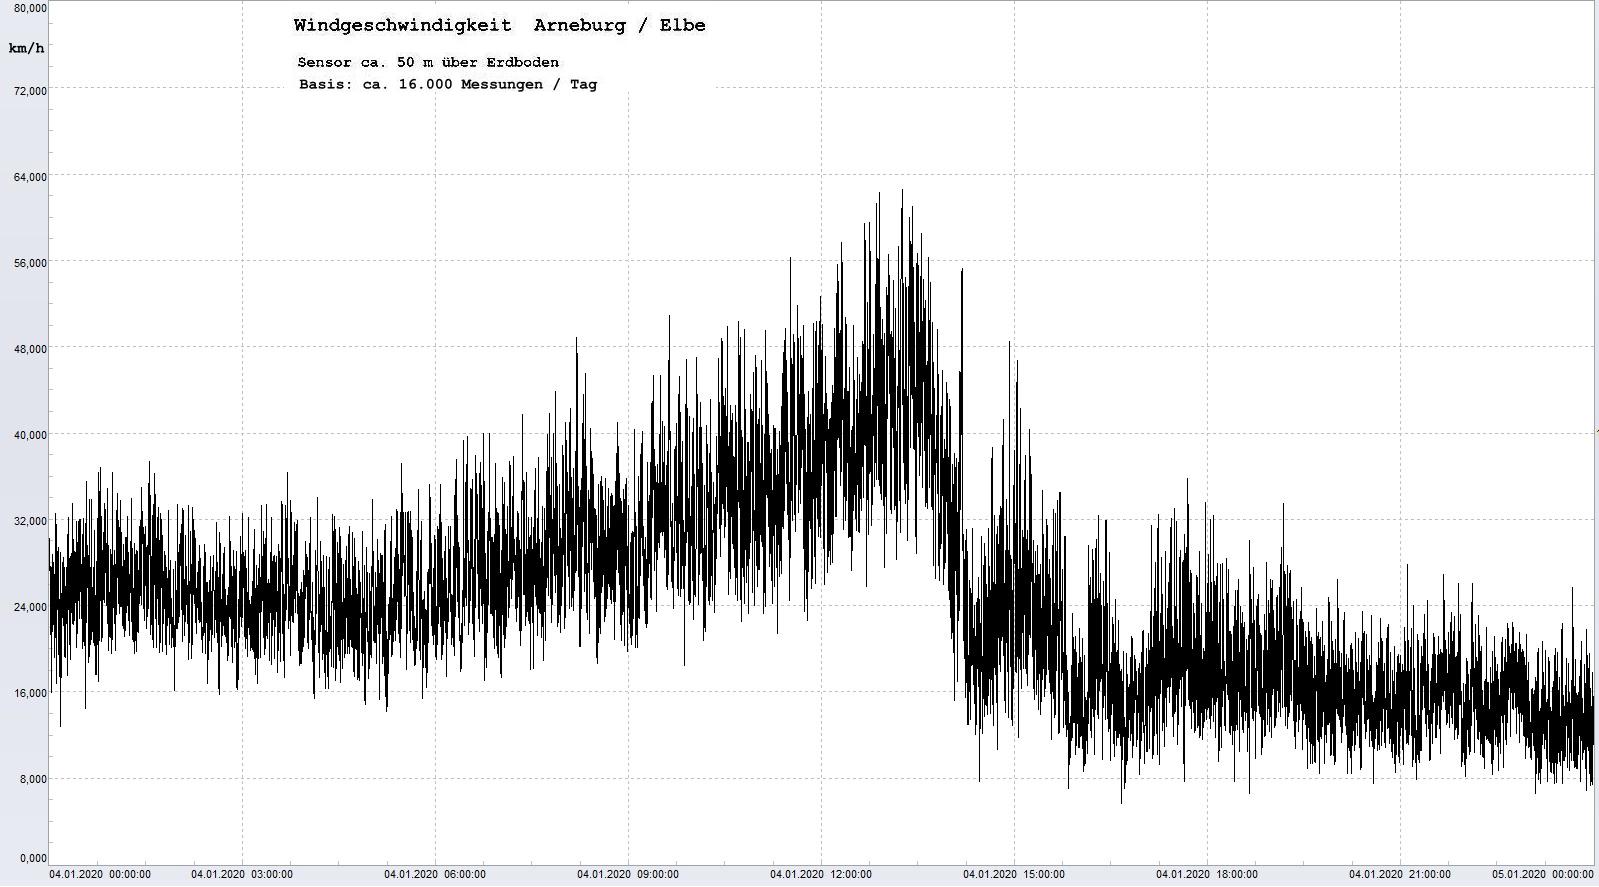 Arneburg Tages-Diagramm Winddaten, 04.01.2020
  Histogramm, Sensor auf Gebäude, ca. 50 m über Erdboden, Basis: 5s-Aufzeichnung